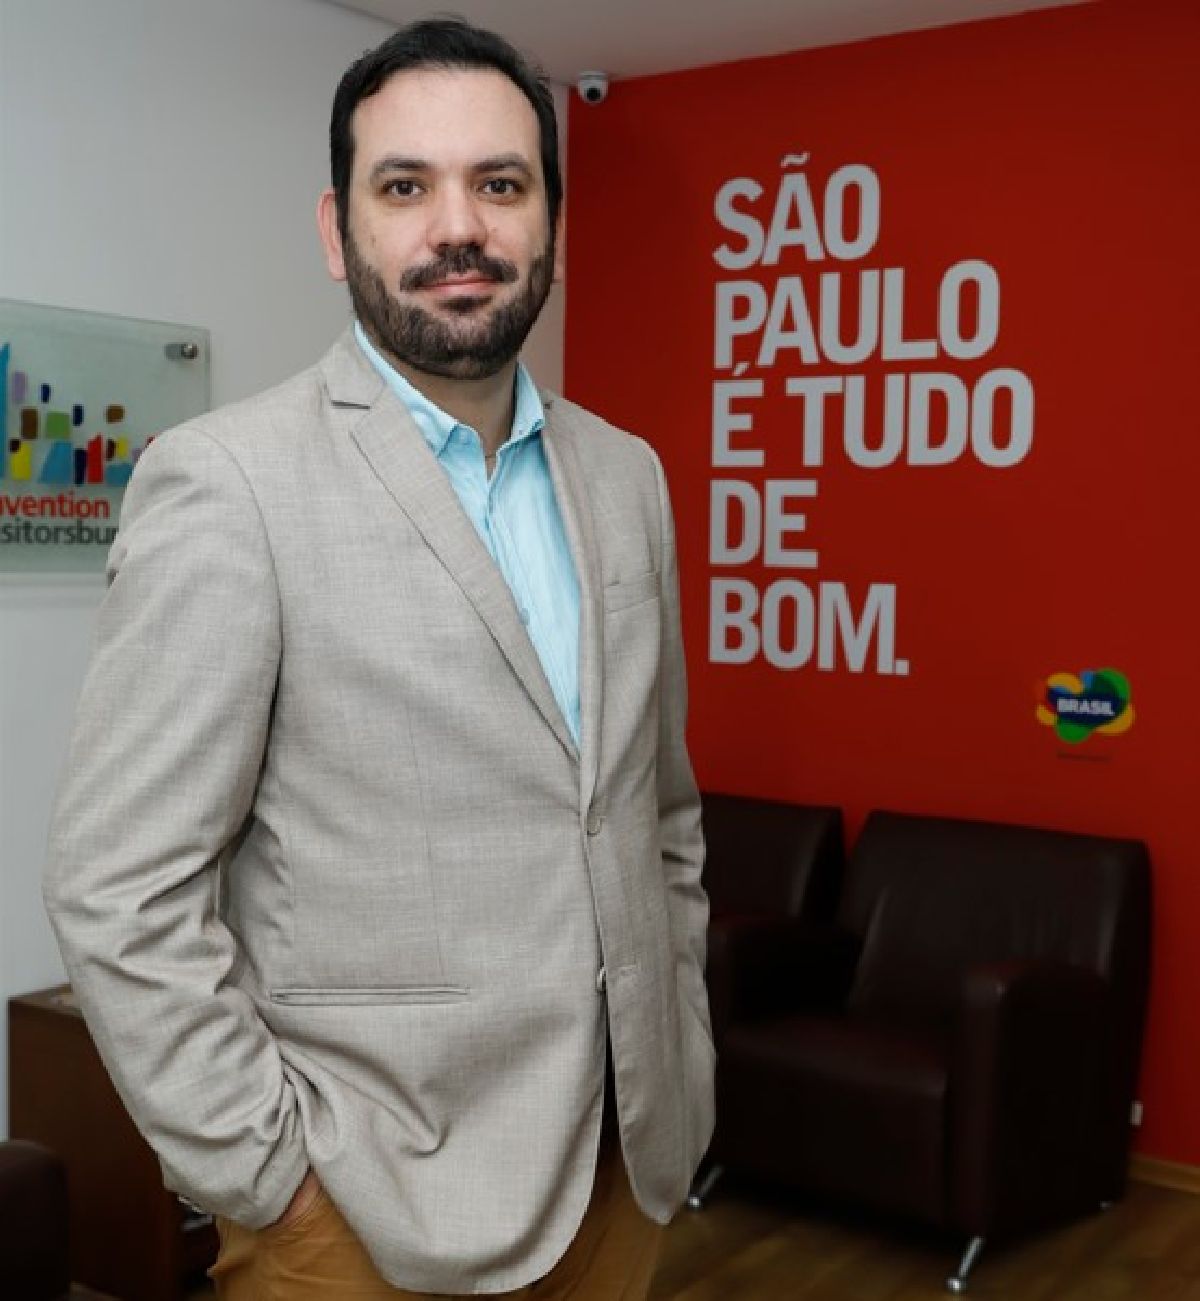 SPCVB e Abear promovem a 2ª edição dos Roadshows Meu Destino é São Paulo, com apoio da Secretaria de Turismo e Viagens do Estado de São Paulo